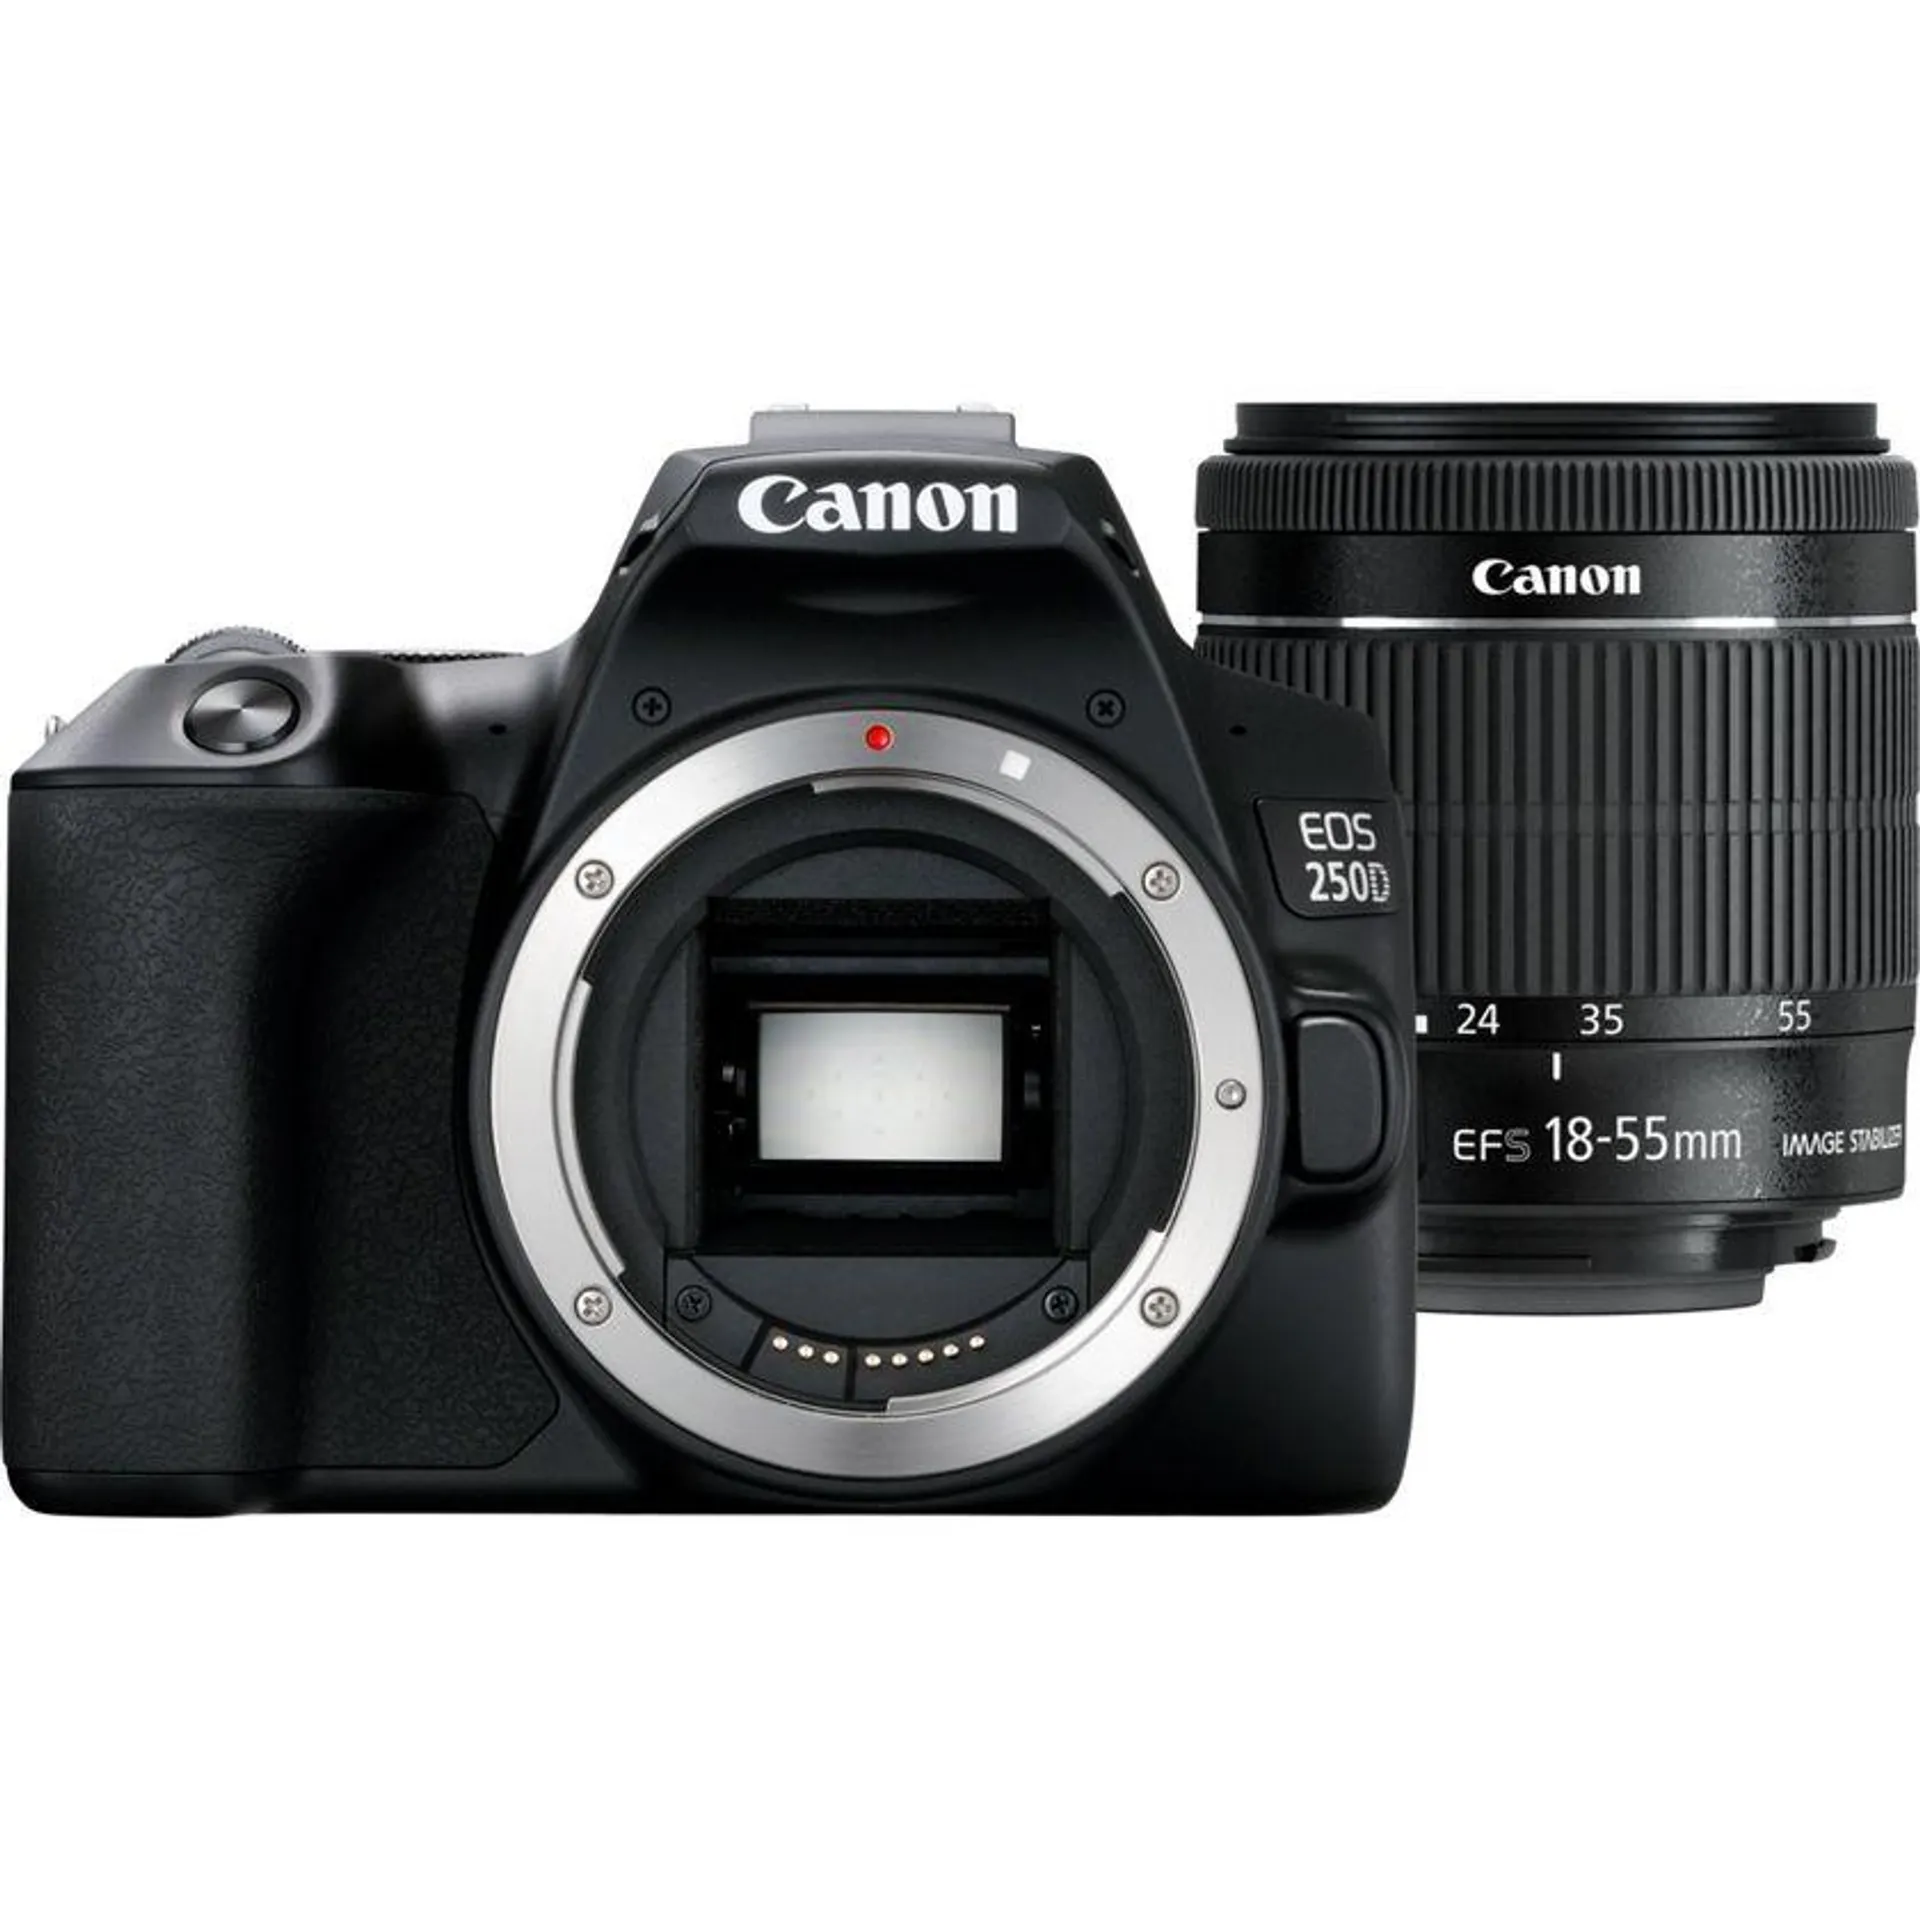 Cámara Canon EOS 250D en negro + objetivo EF-S 18-55mm f/4-5.6 IS STM